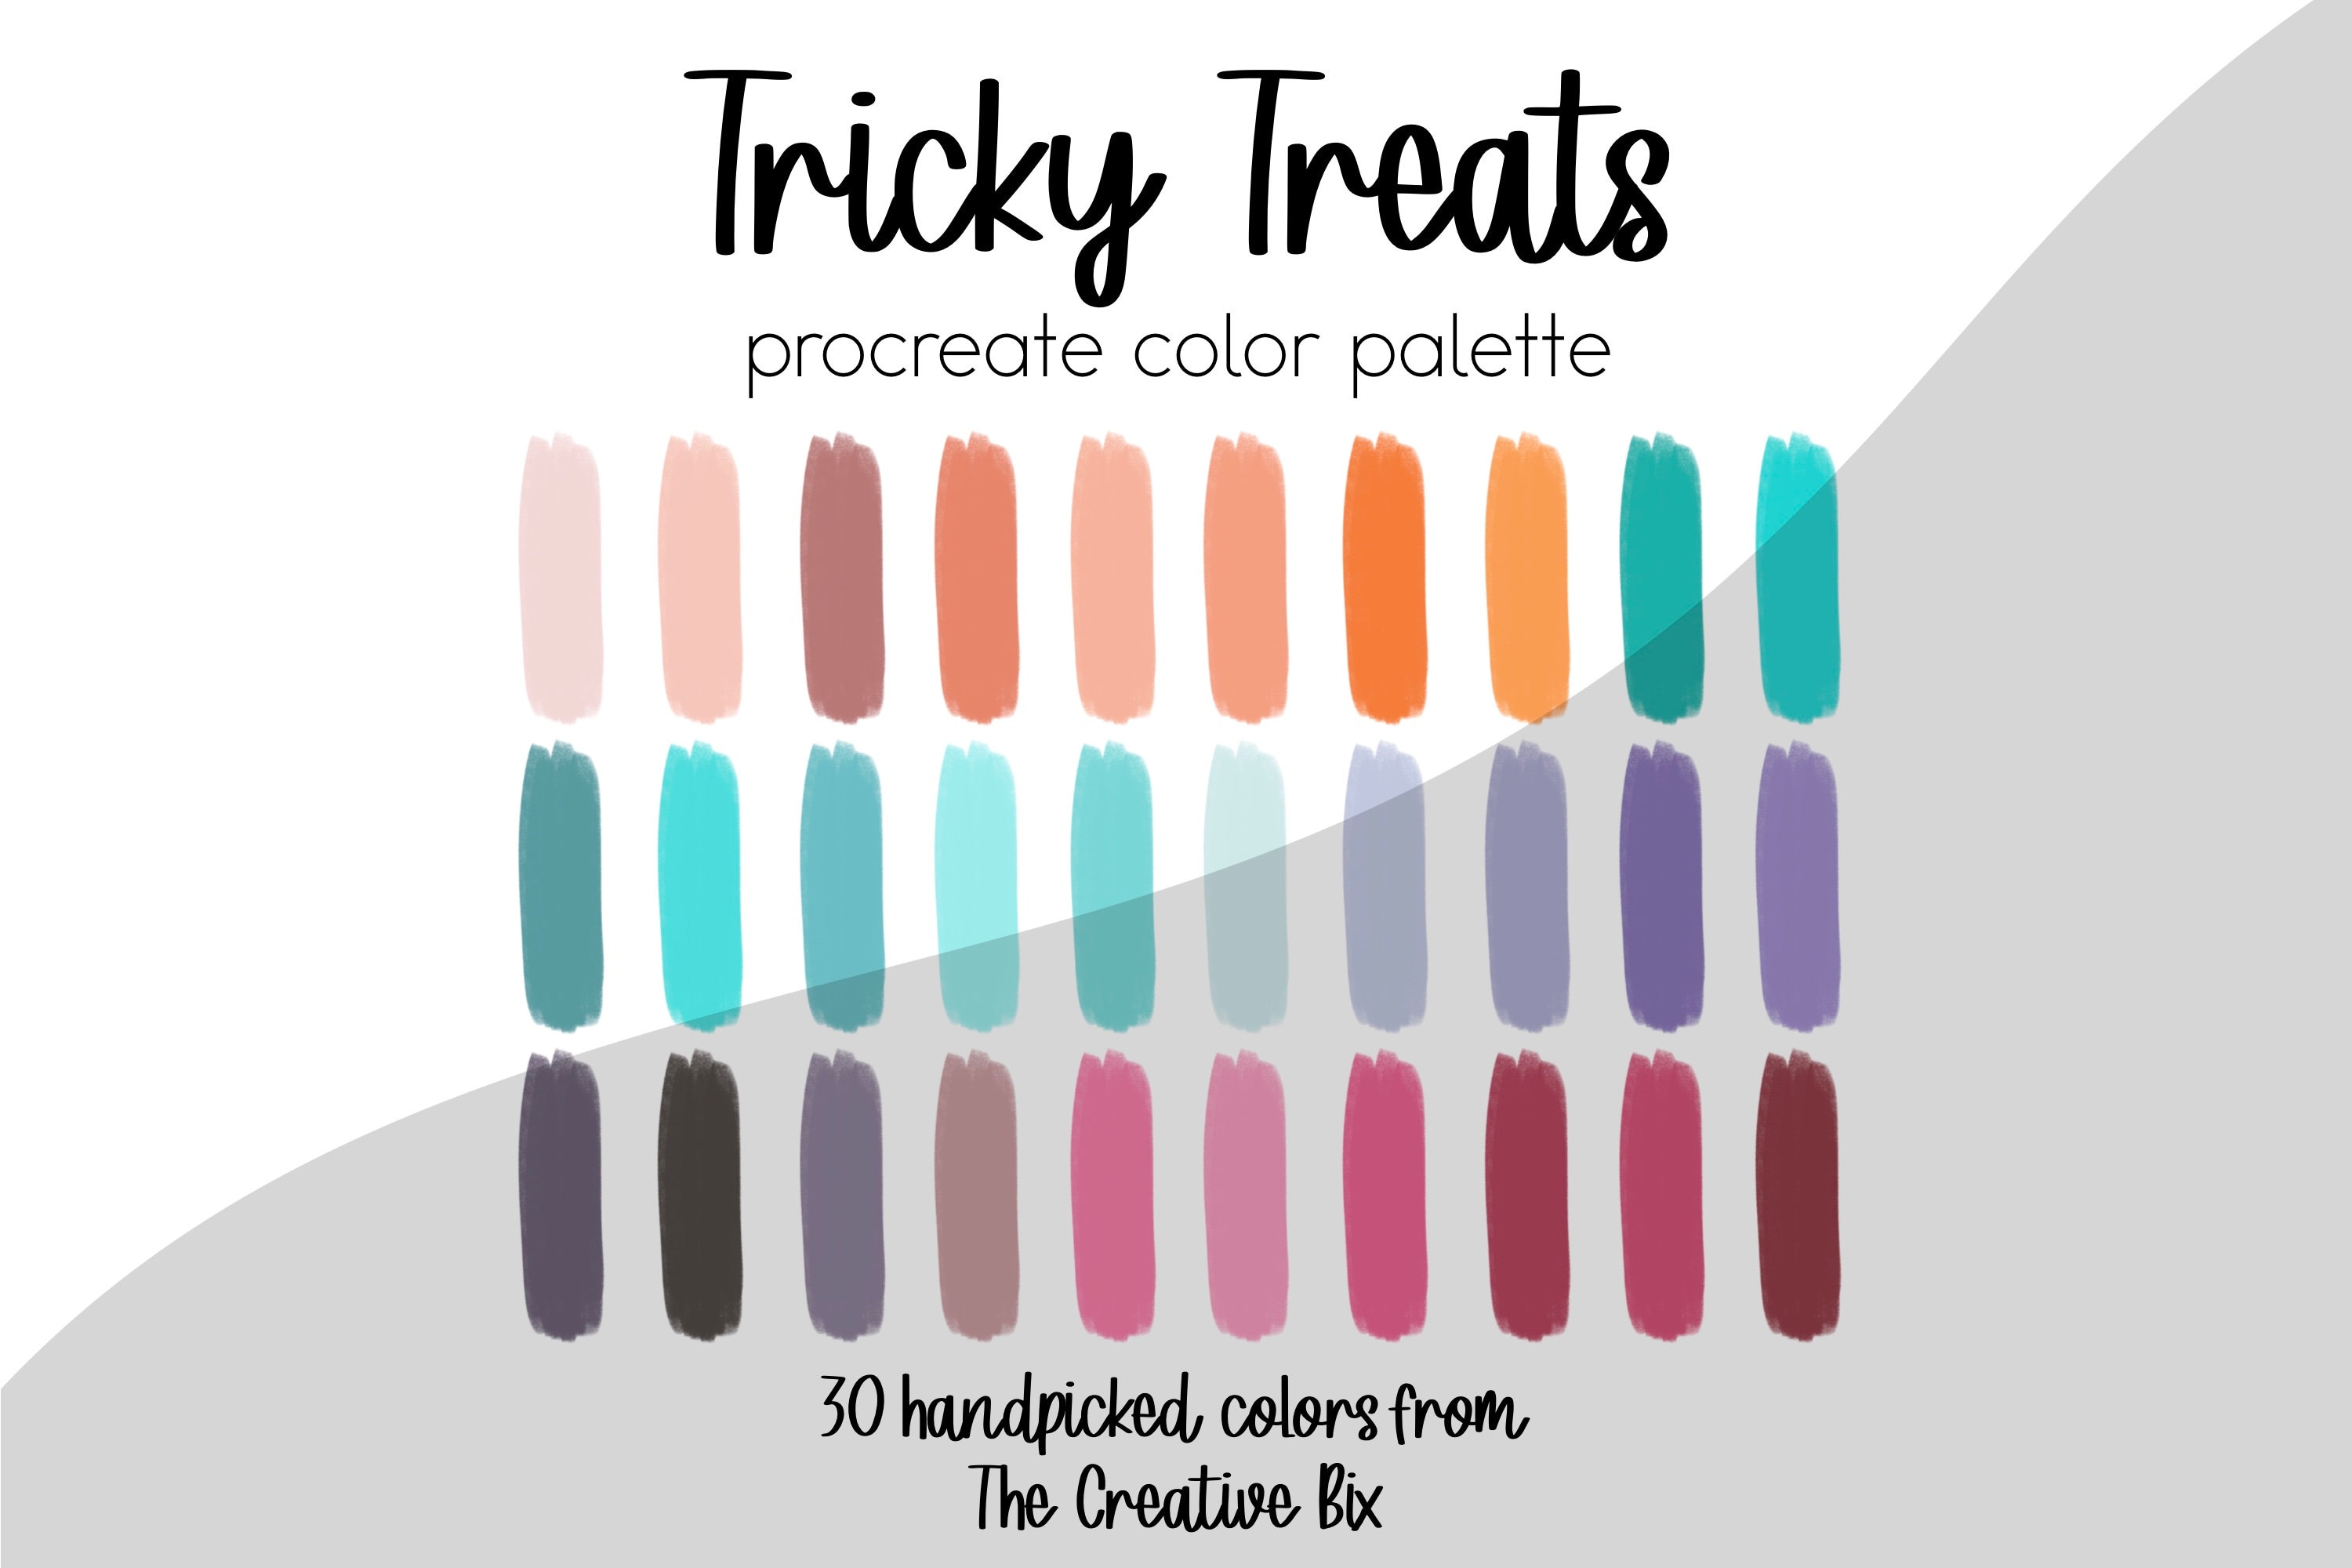 Tricky Treats Procreate Palette Colors Palette - Etsy